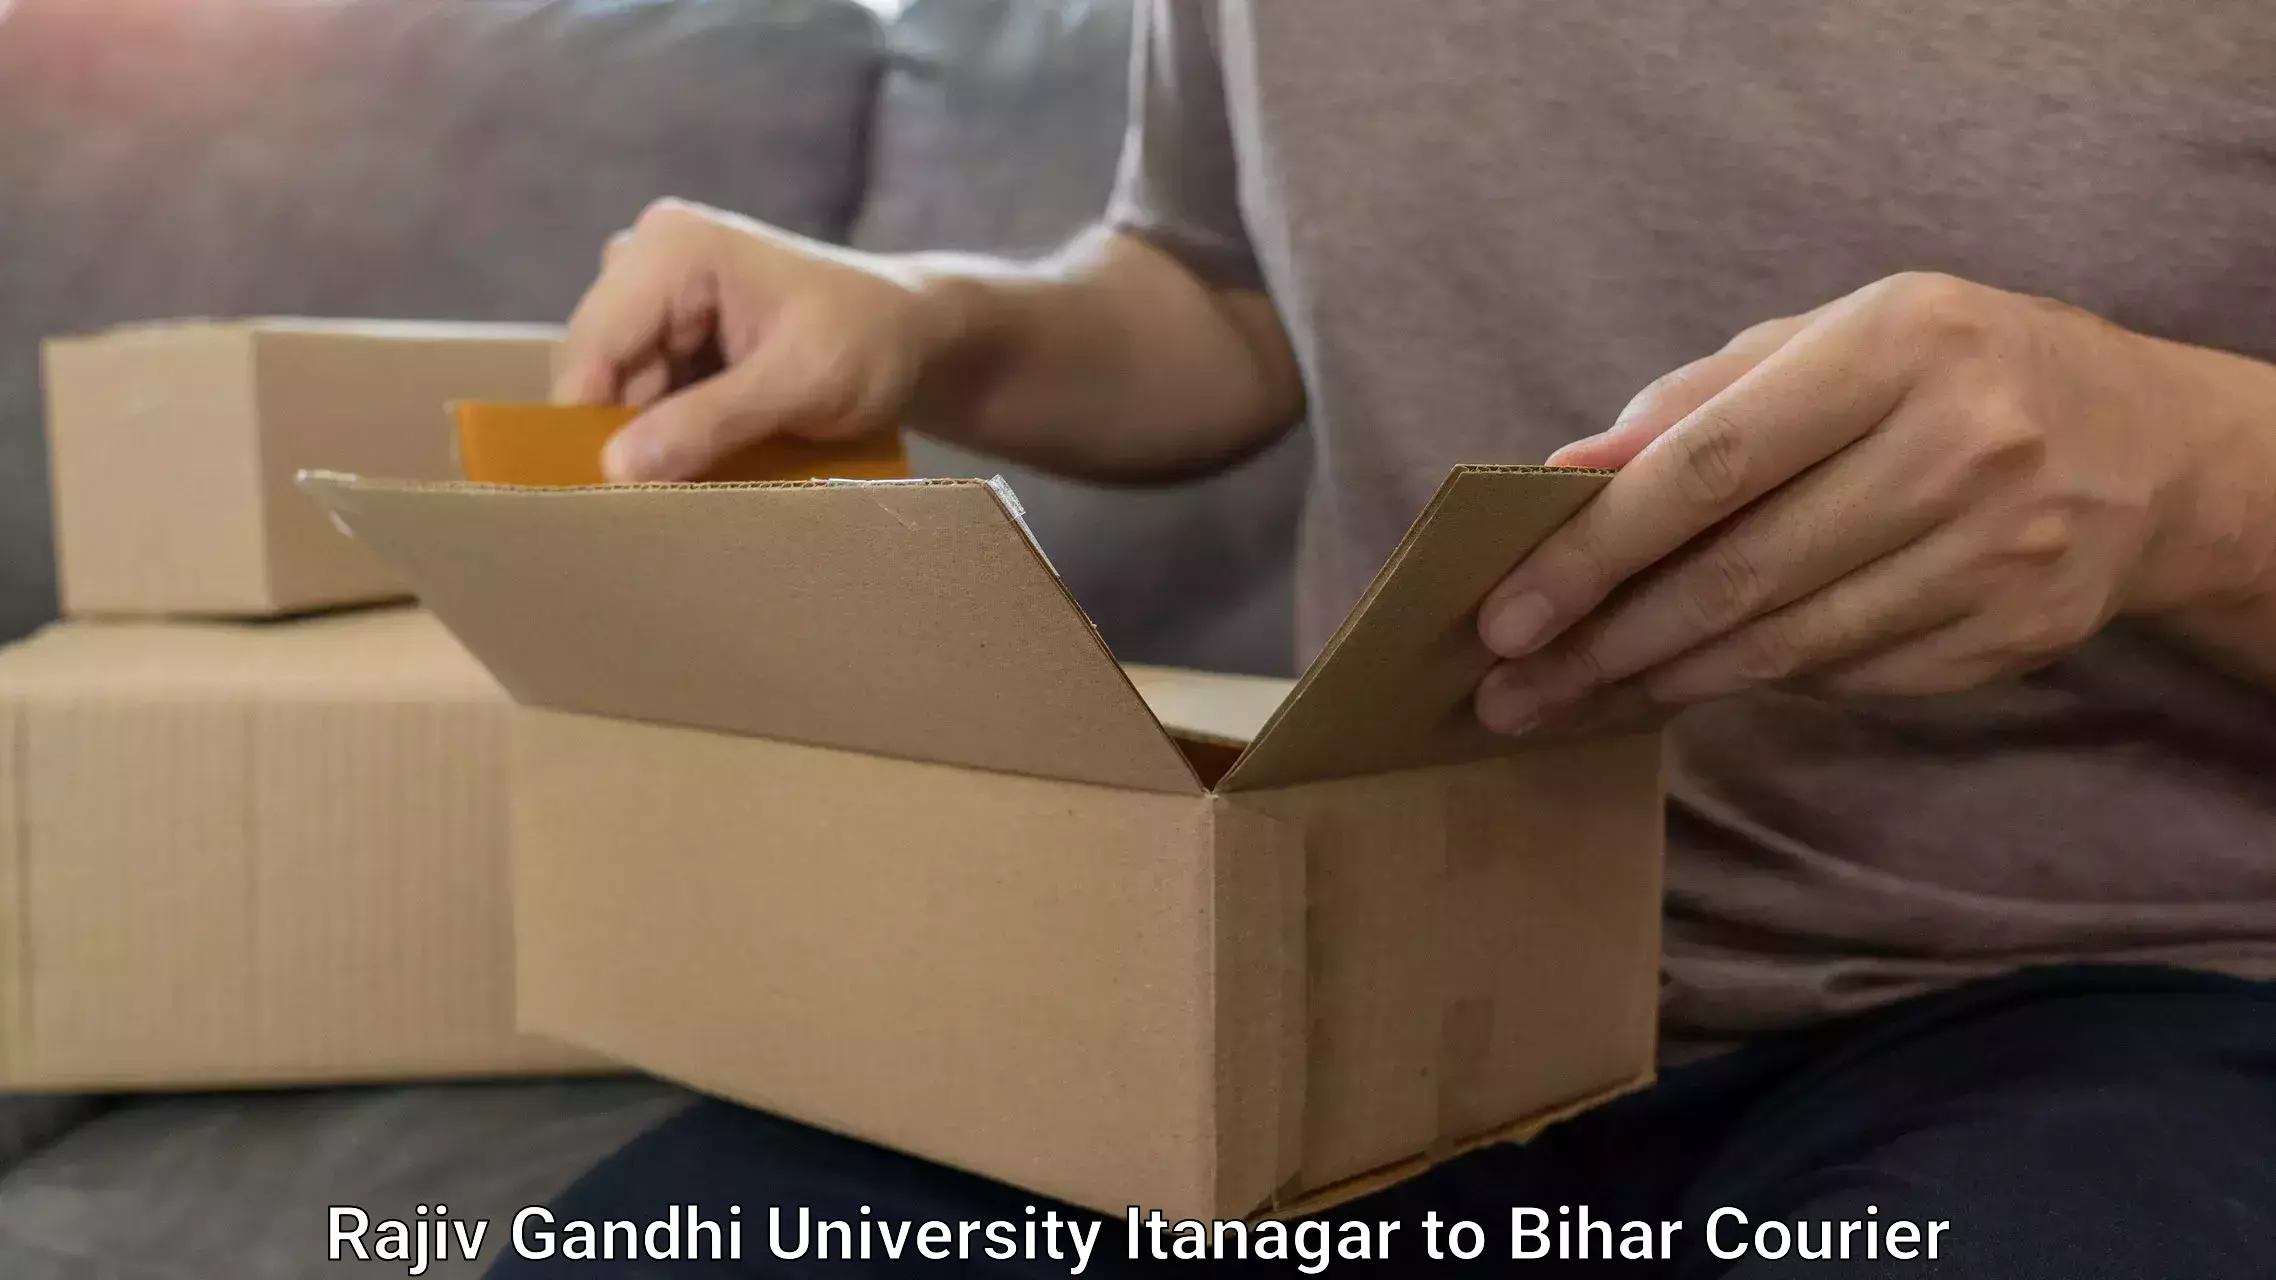 Baggage shipping advice Rajiv Gandhi University Itanagar to Biraul